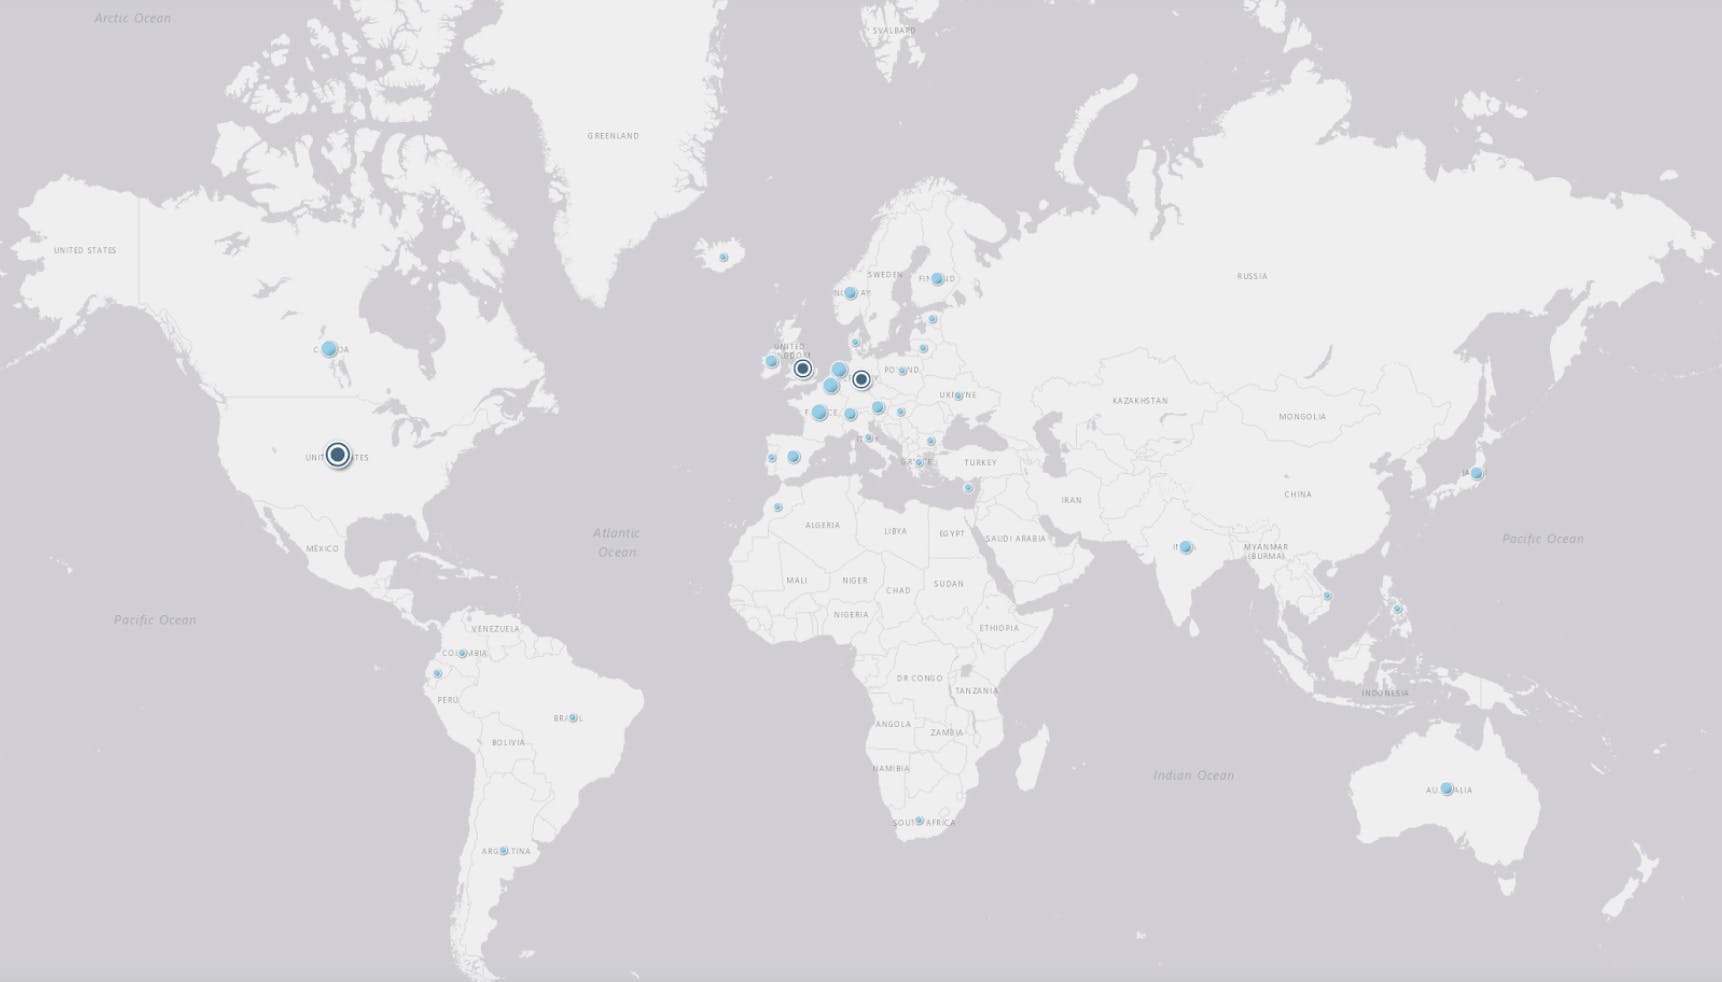 Drupal Business Survey 2020 locations of the participants